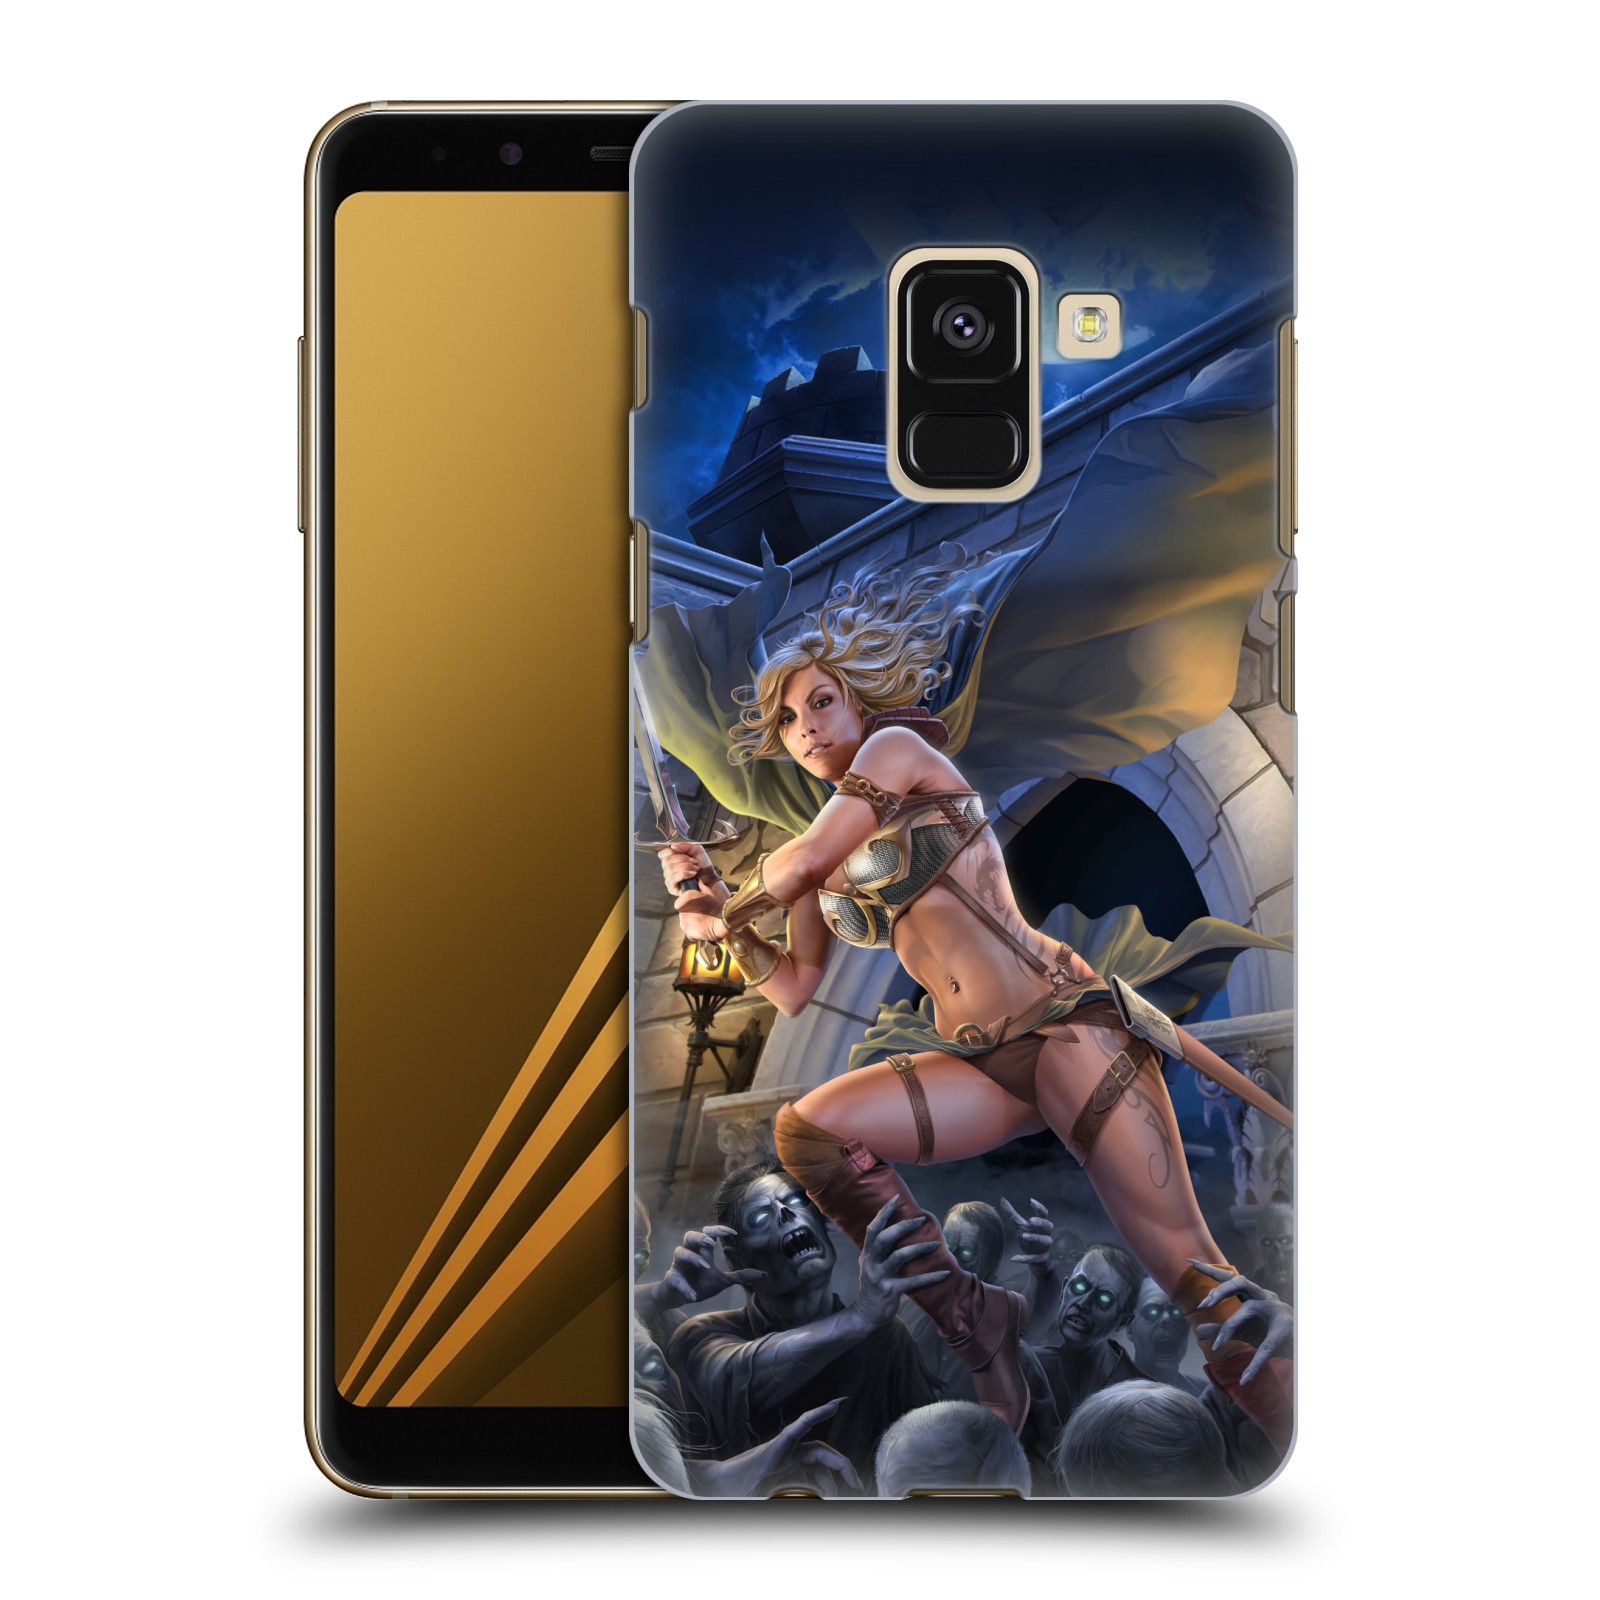 Pouzdro na mobil Samsung Galaxy A8+ 2018, A8 PLUS 2018 - HEAD CASE - Fantasy kresby Tom Wood - Princezna bojovnice a zombies